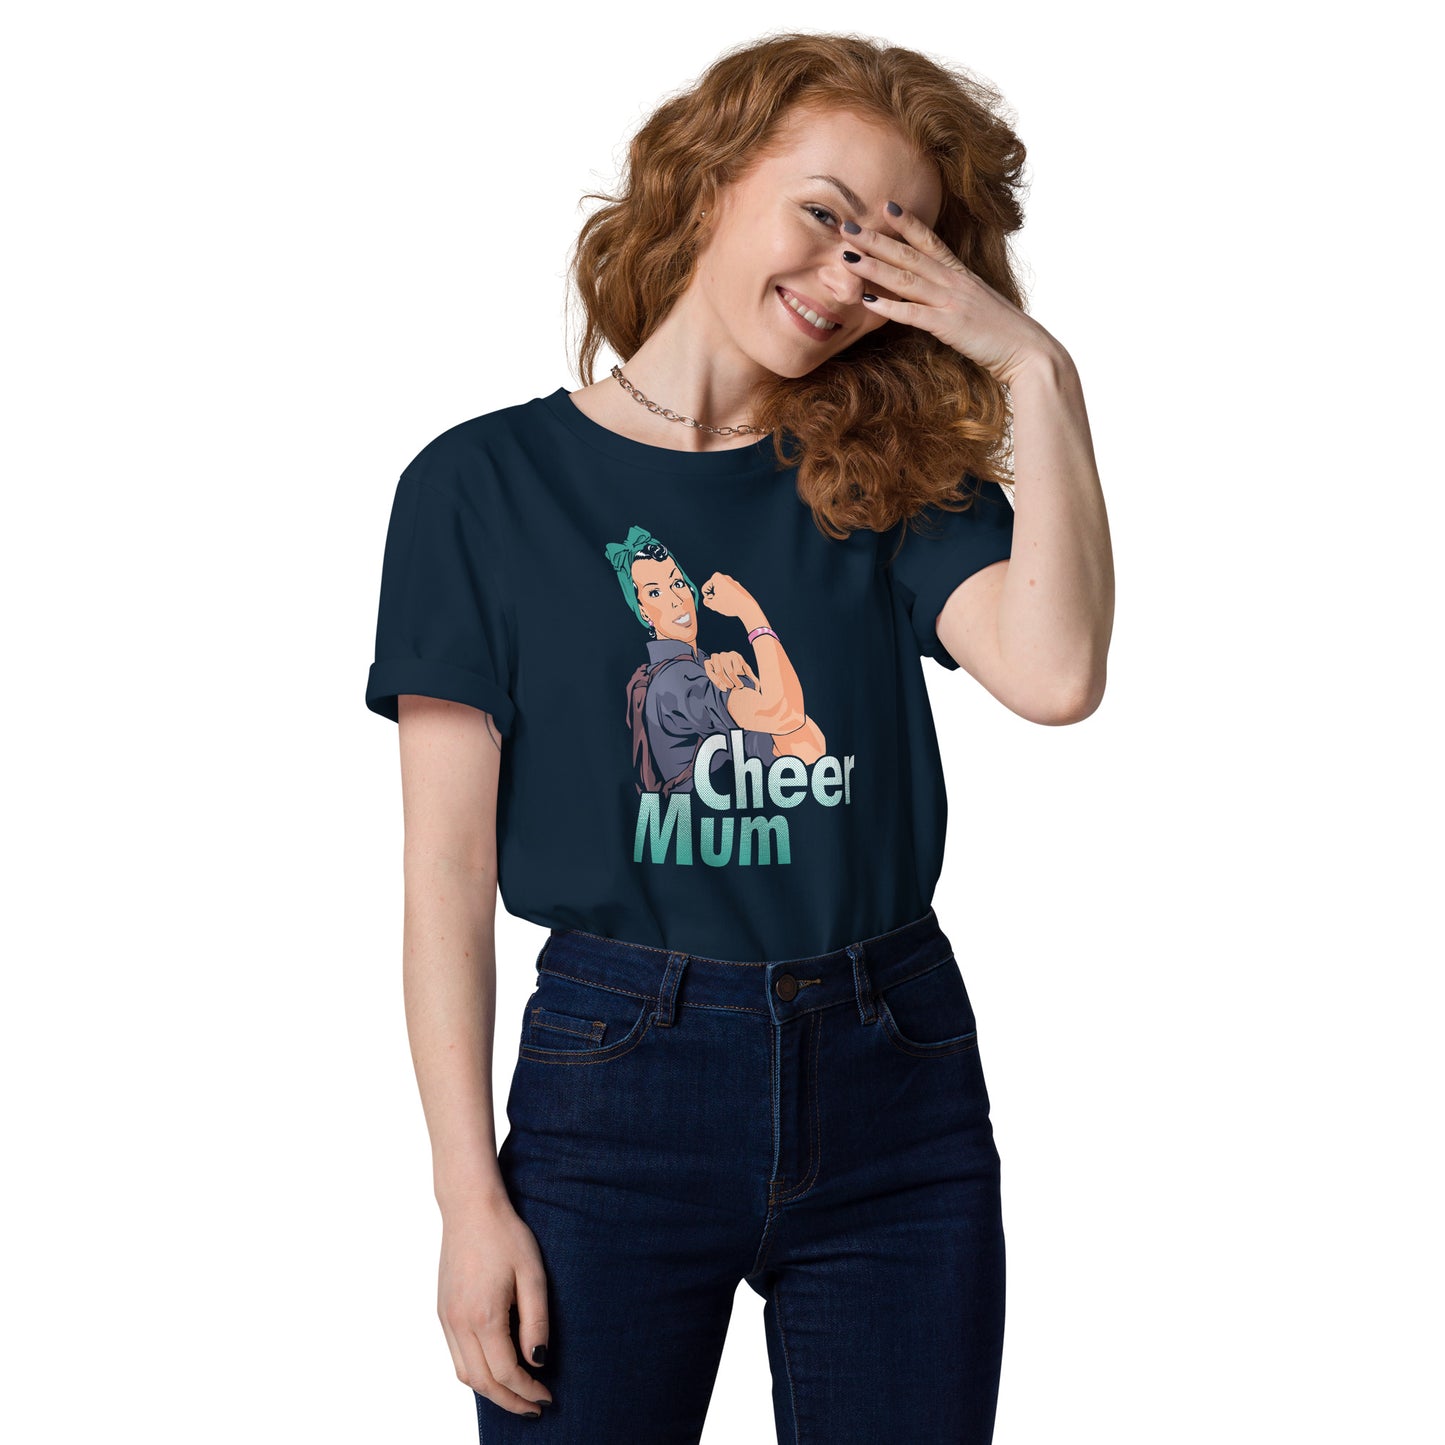 Cheer Mum T-Shirt (Style 4)